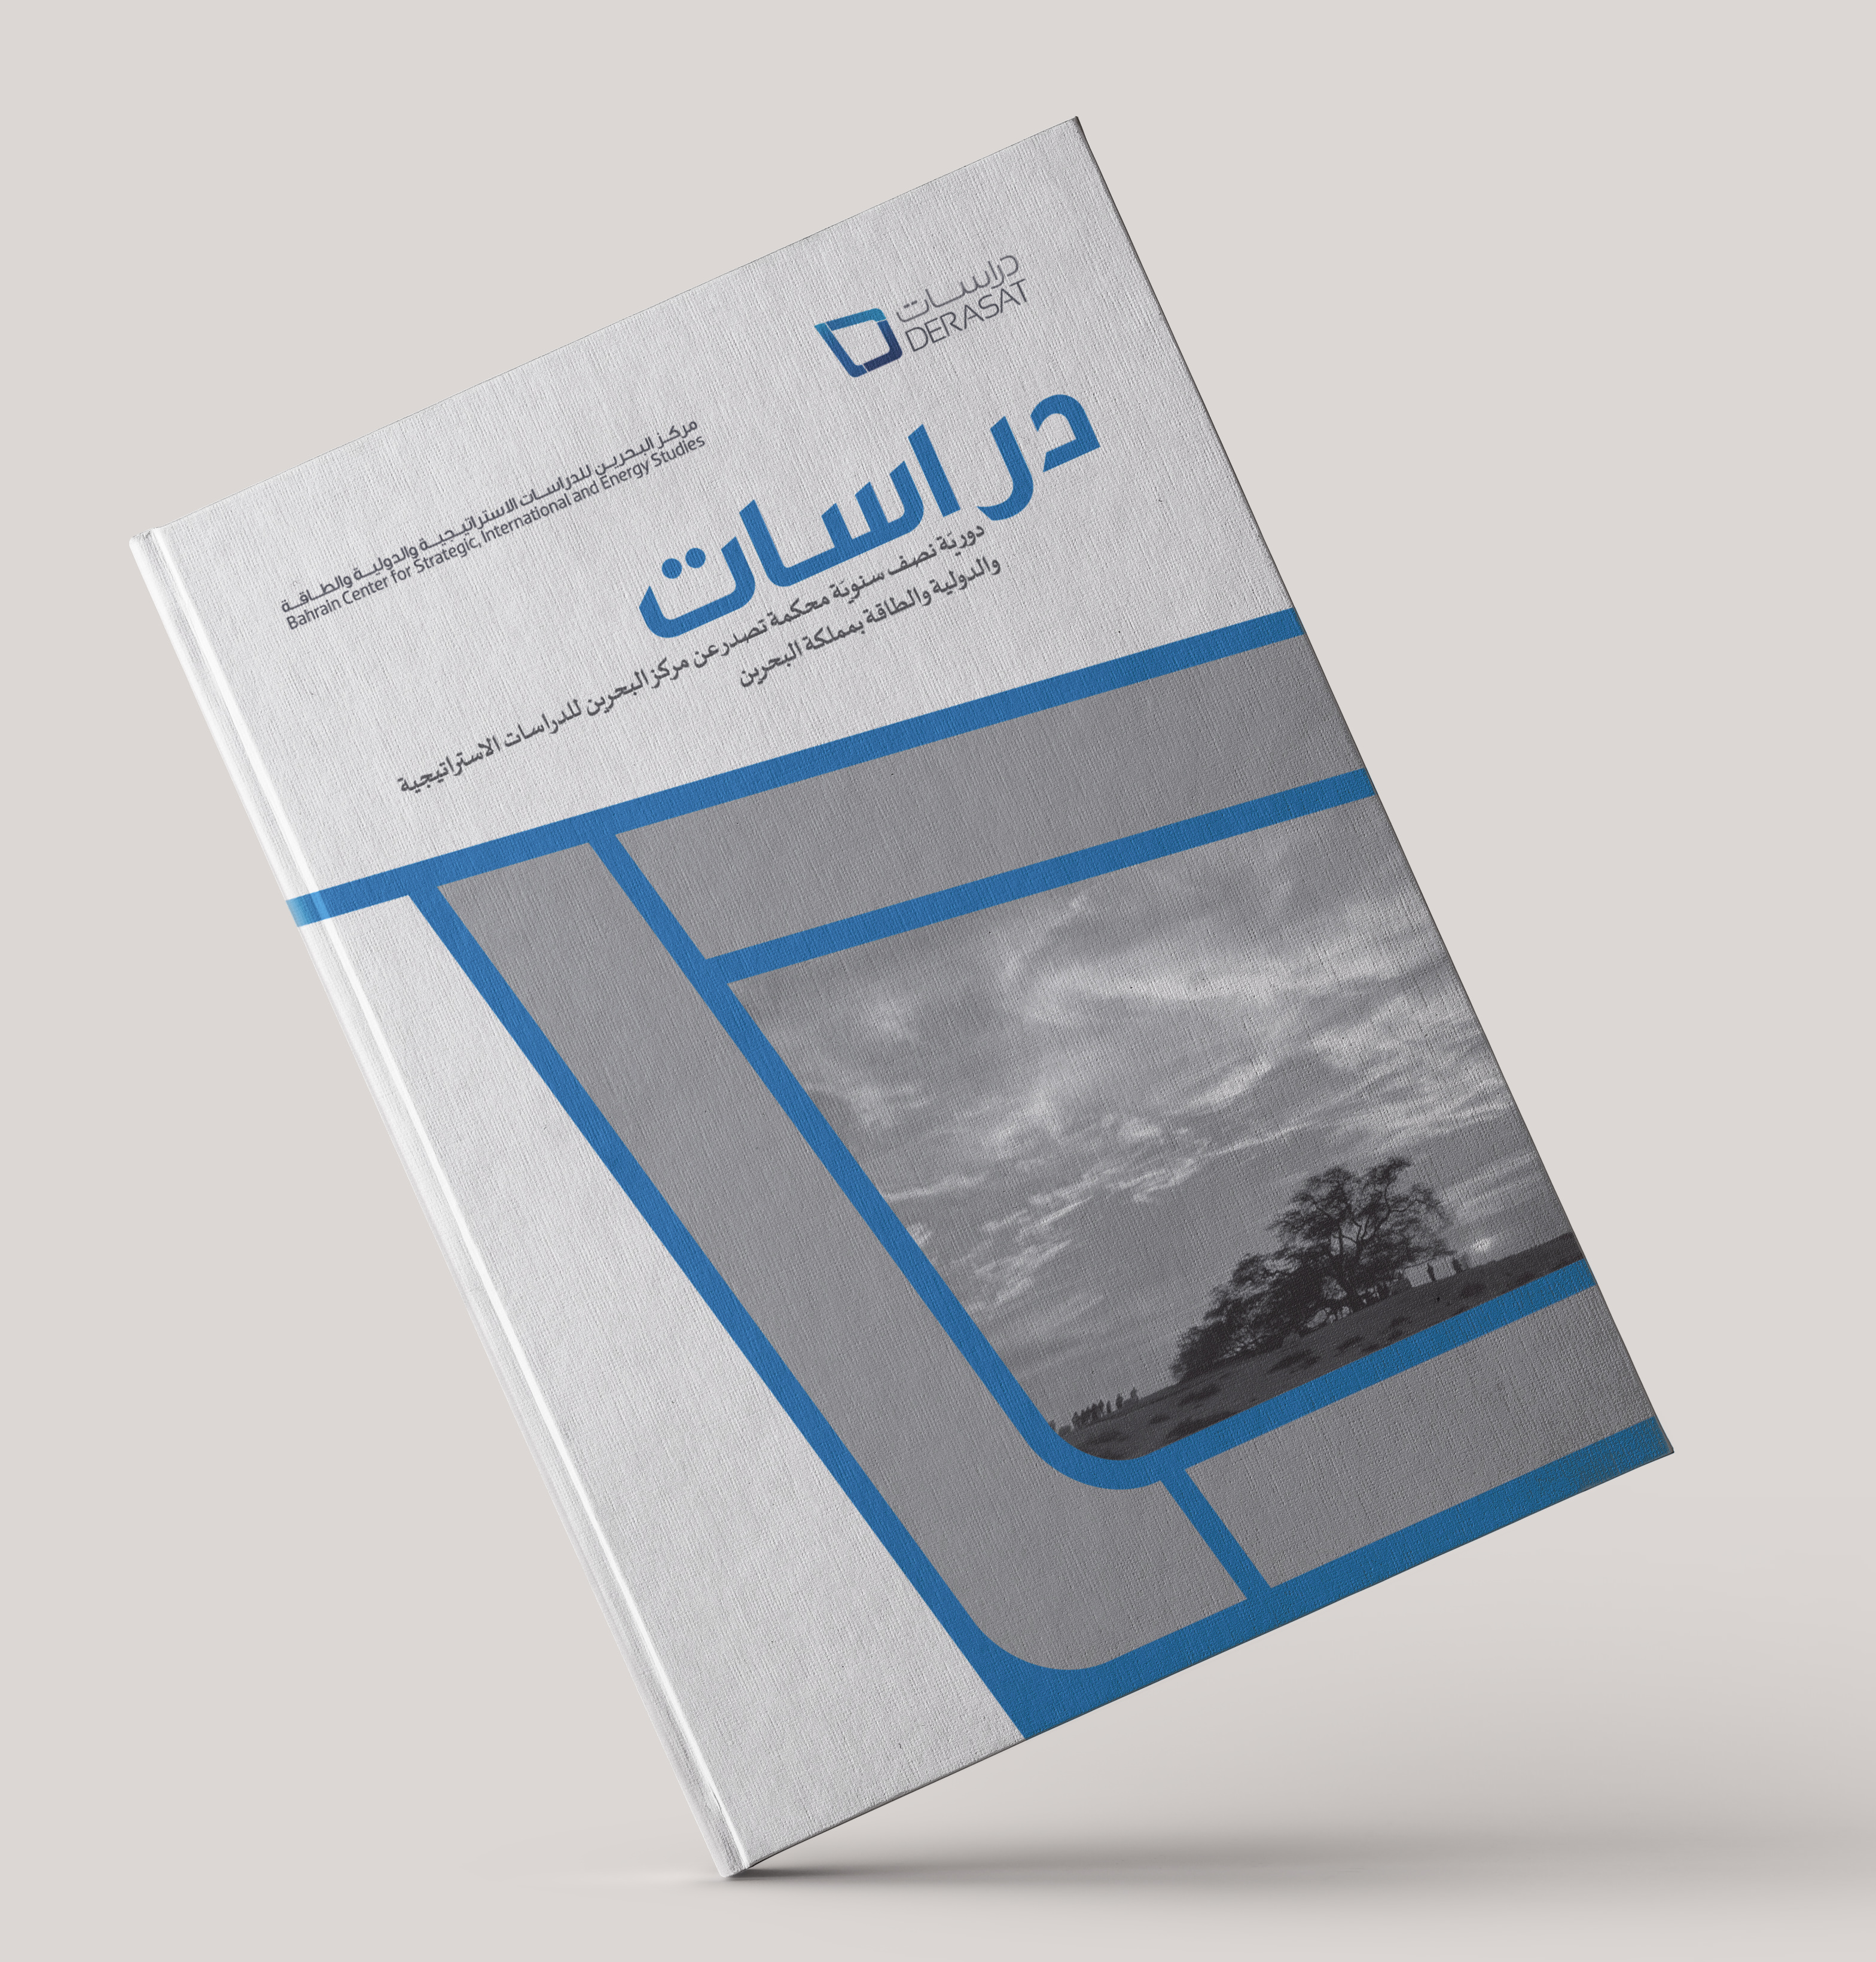 Derasat Journal 2018 – Issue 1